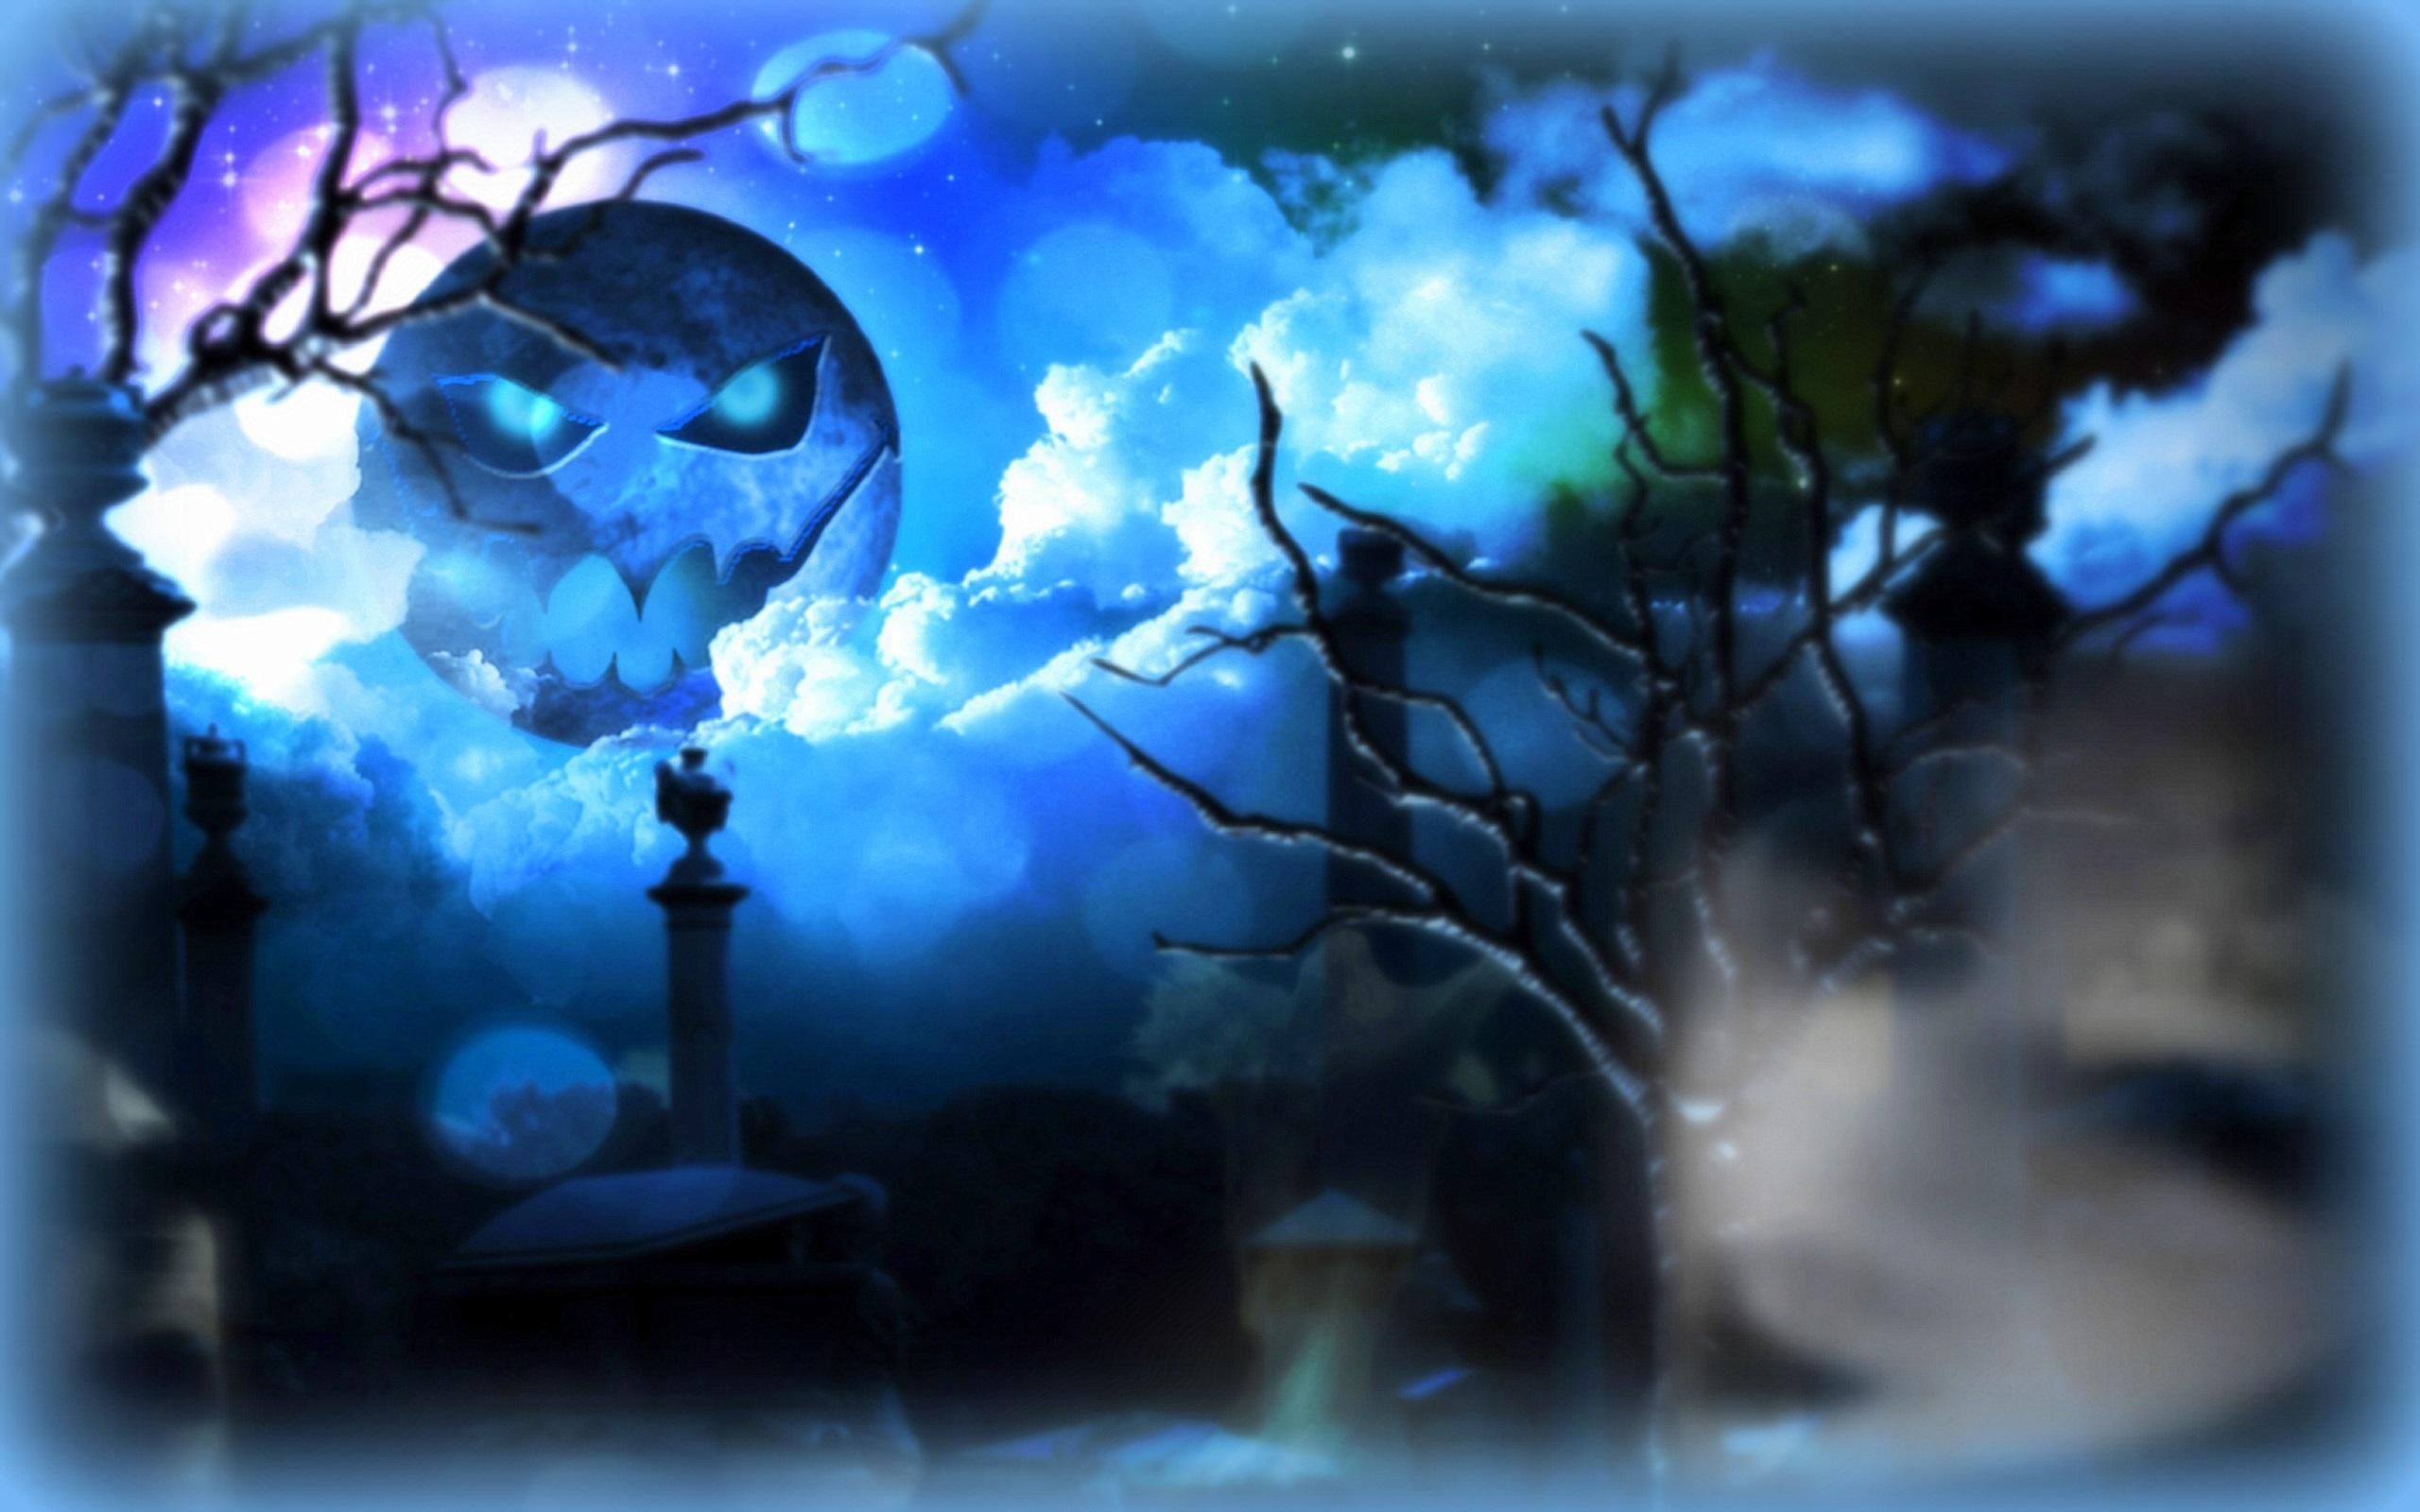 Blue Moon Halloween HD desktop wallpaper, Widescreen, High Definition